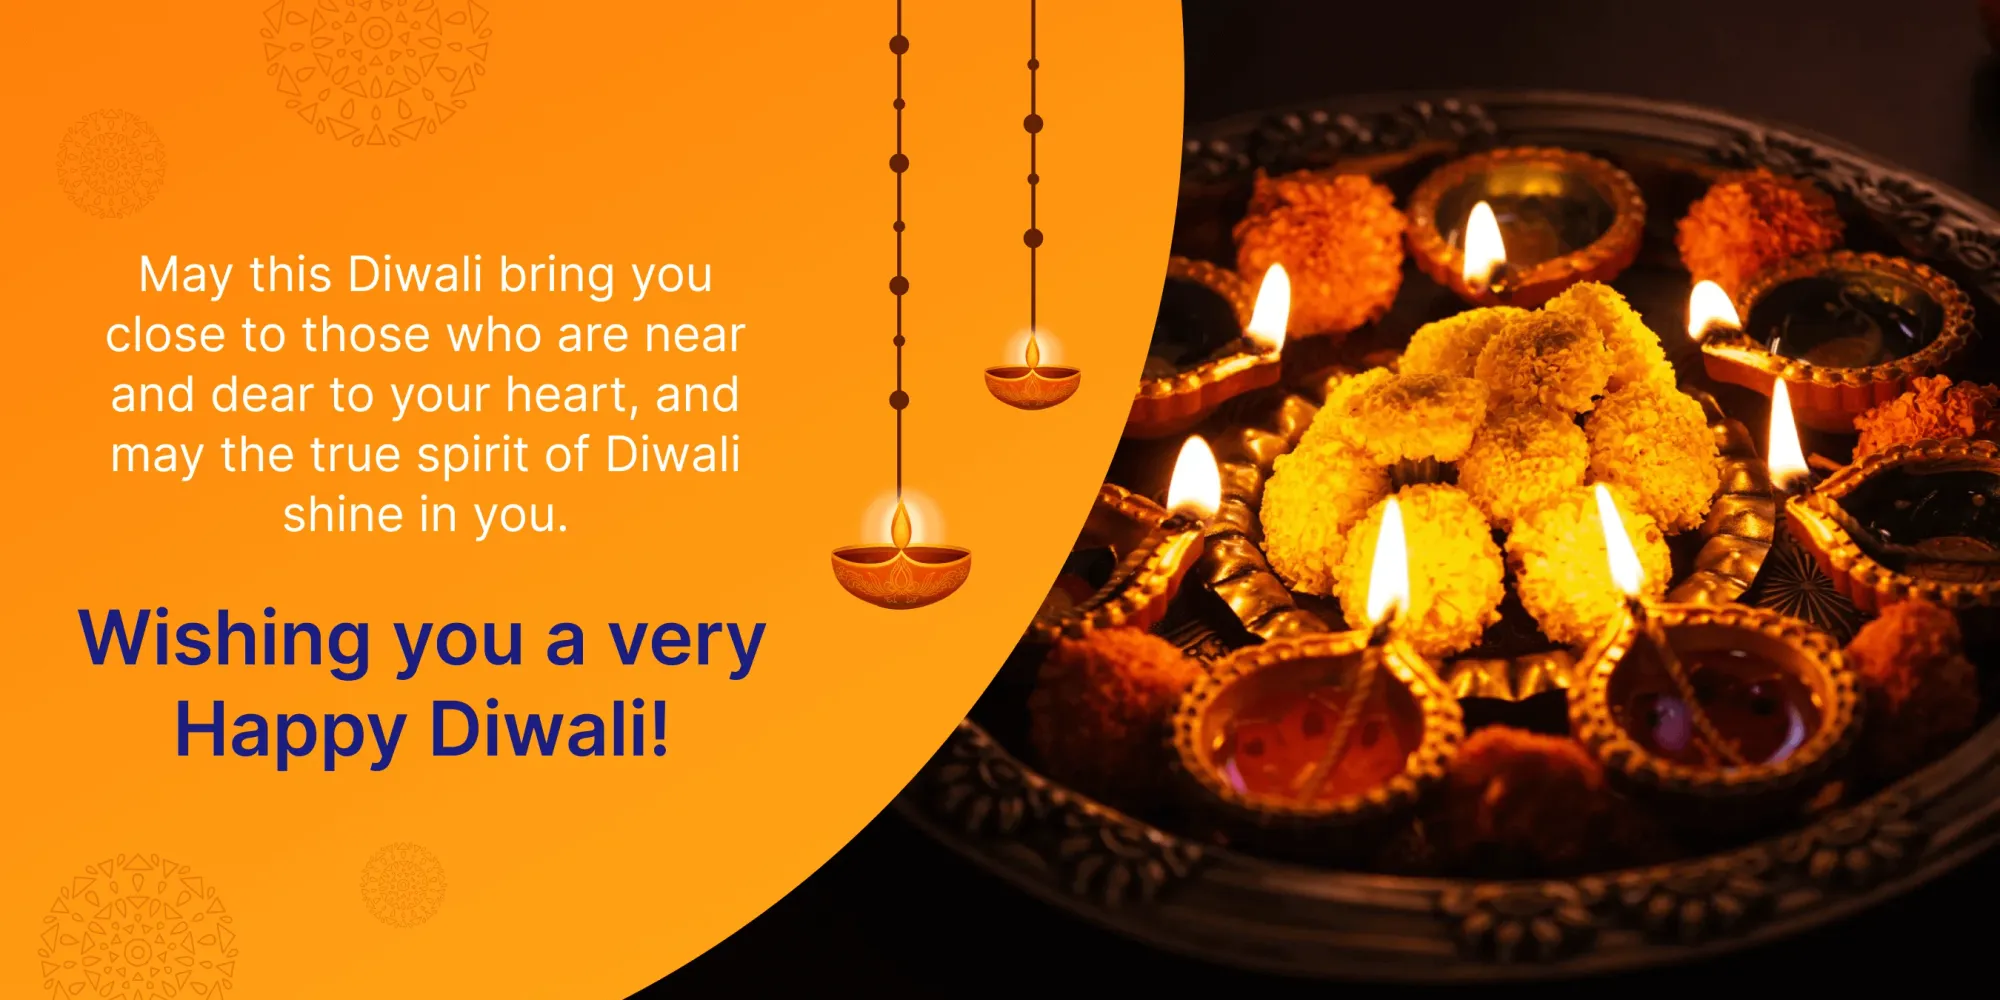 I migliori auguri di Diwali per i colleghi